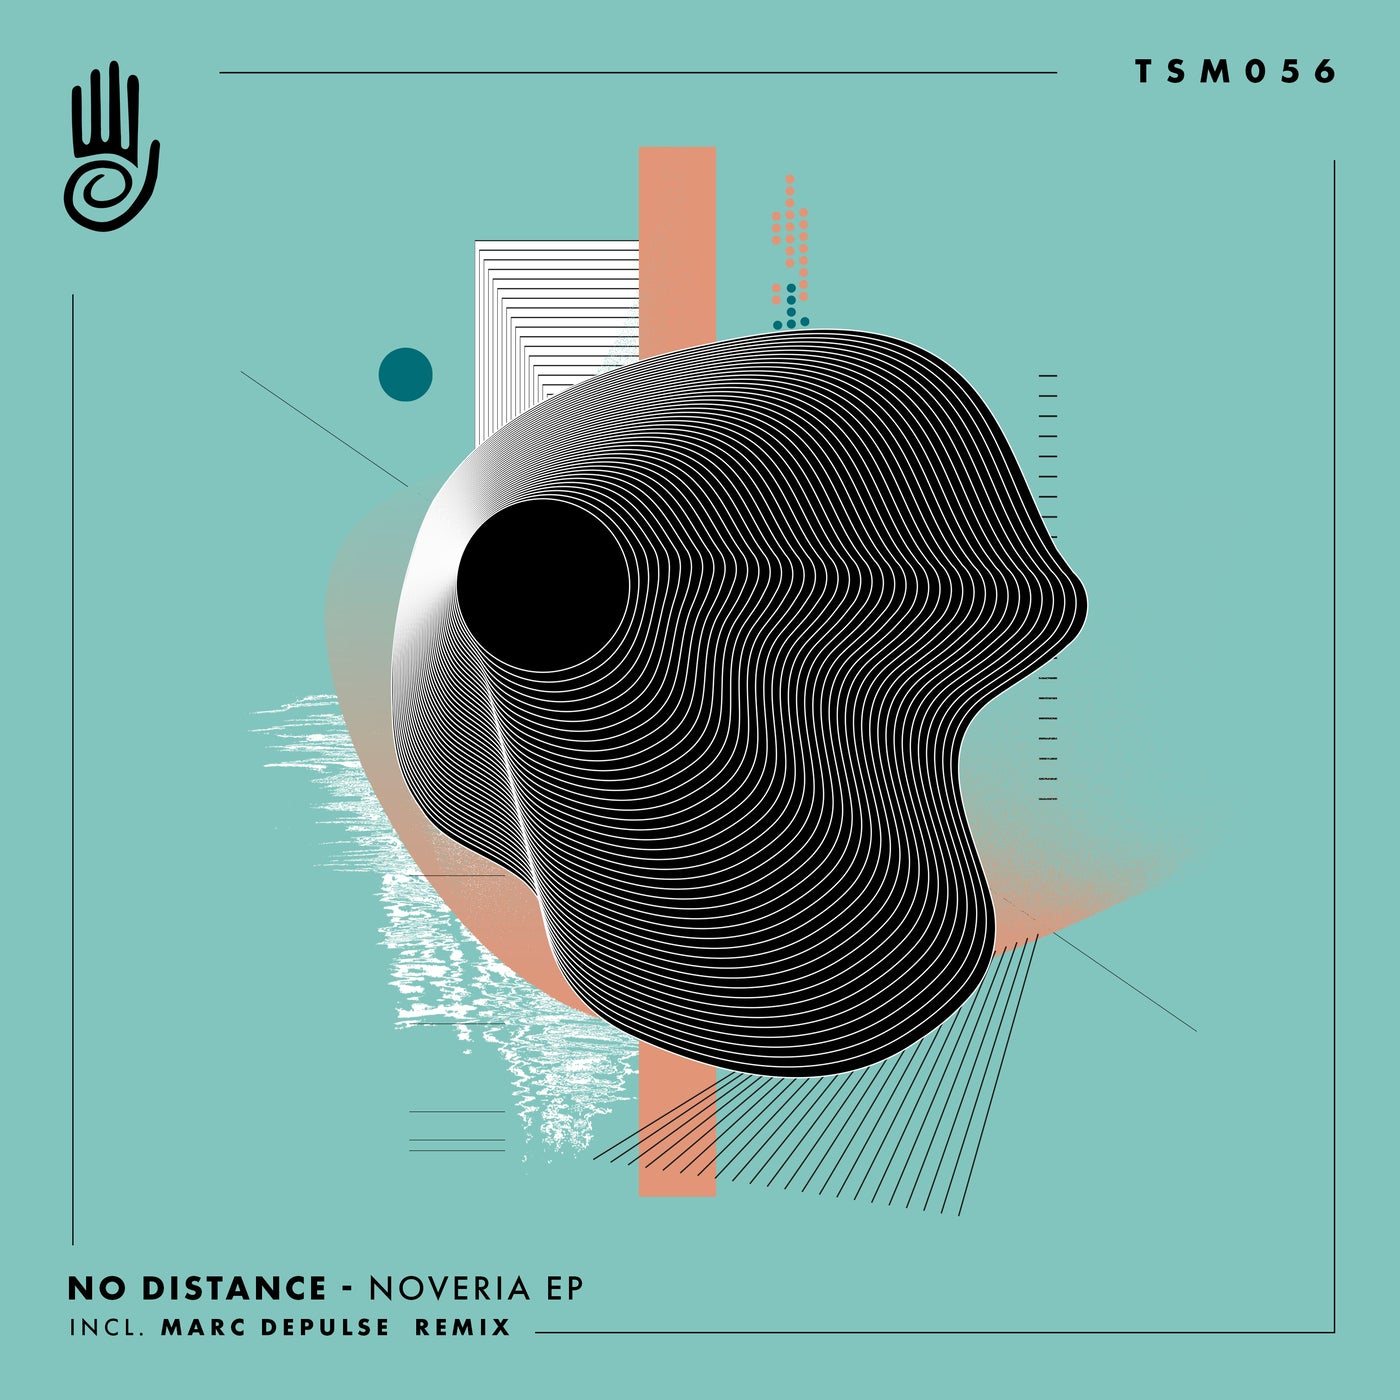 No Distance - Noveria EP [TSM056]